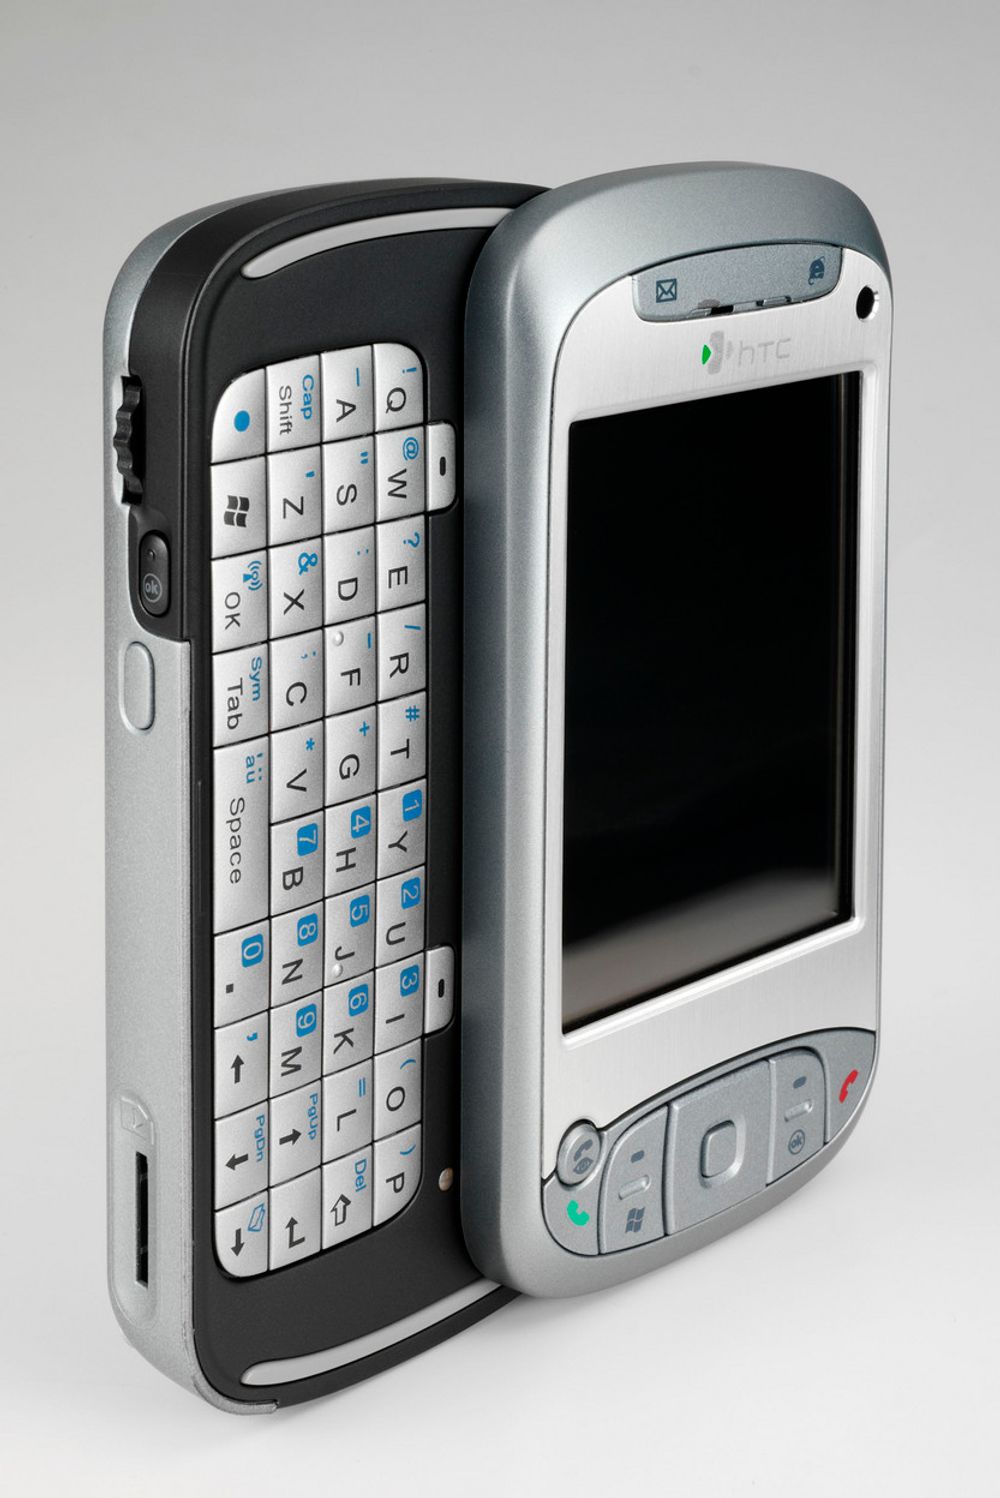 HTC TyTN - tidligere QTEK 9600.